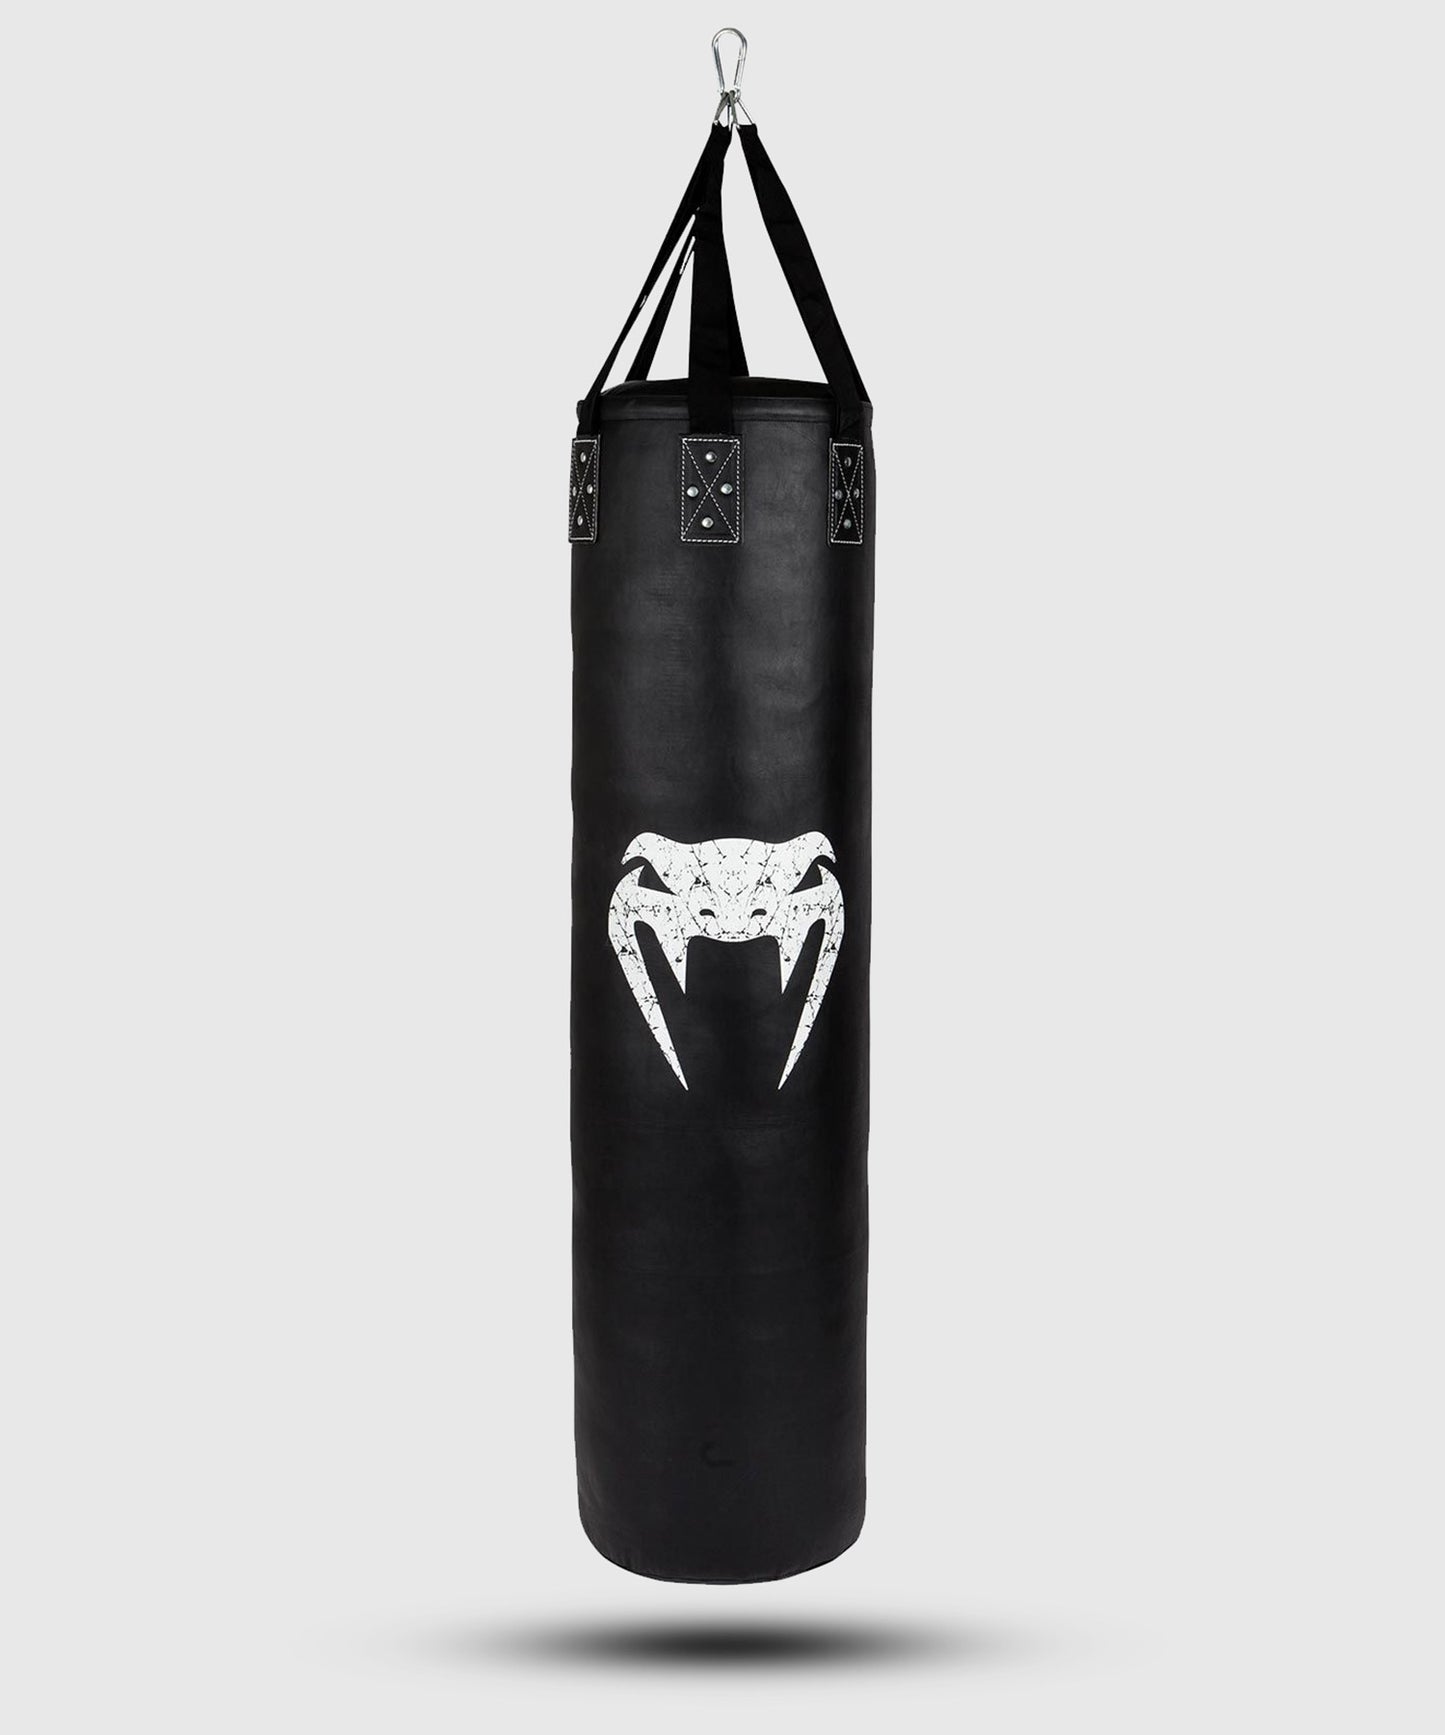 Saco de Boxeo Venum Challenger (gancho incluido) - Negro/Blanco - 150 cm - Lleno